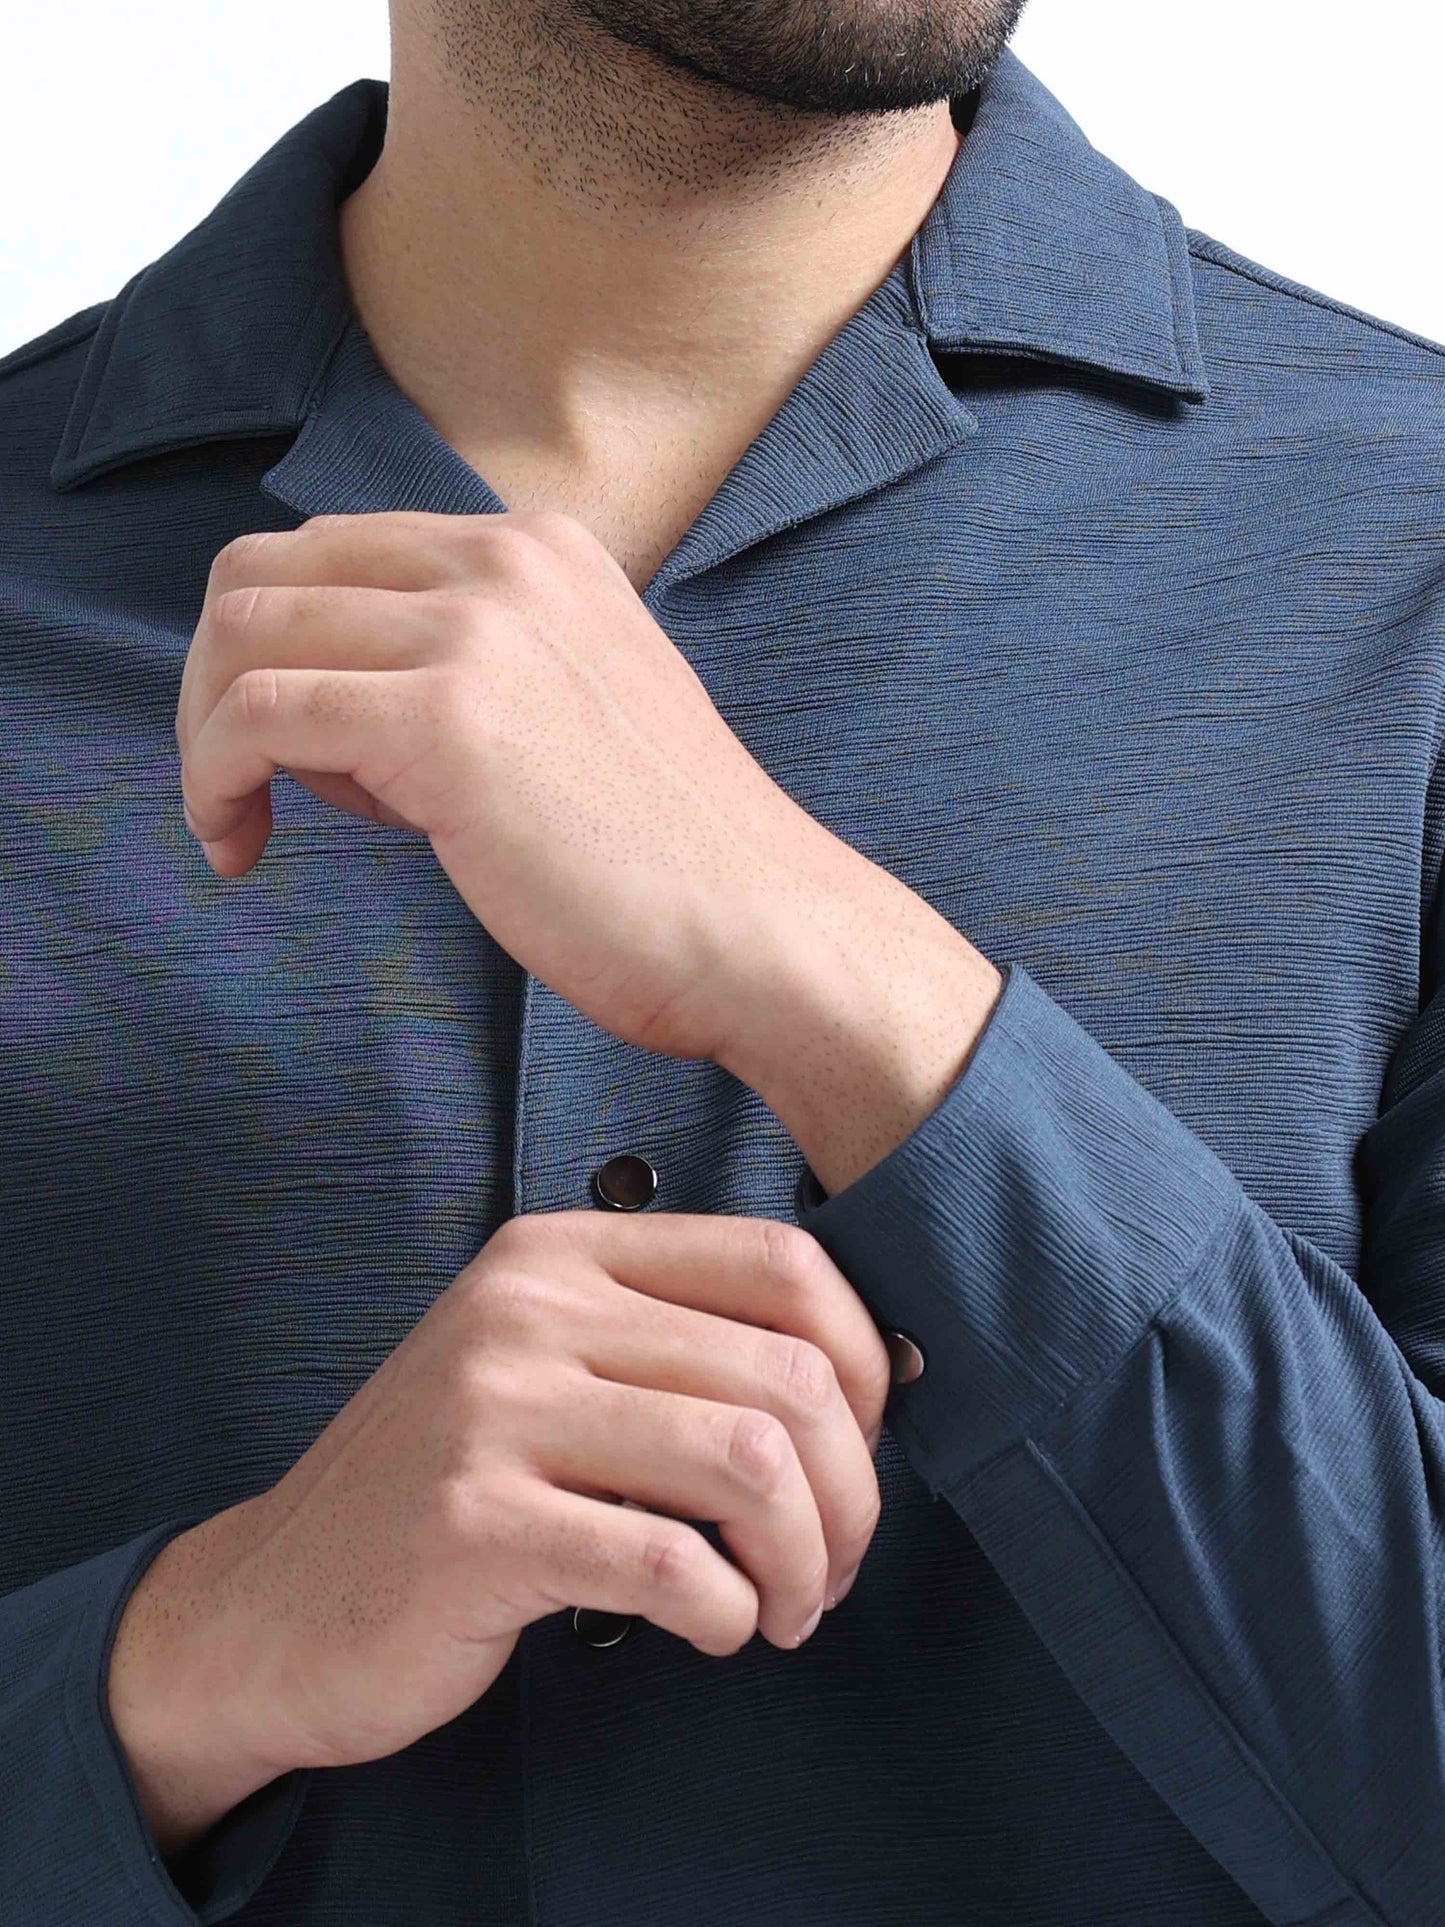 Blue Lycra Full Sleeve Shirt For Men 